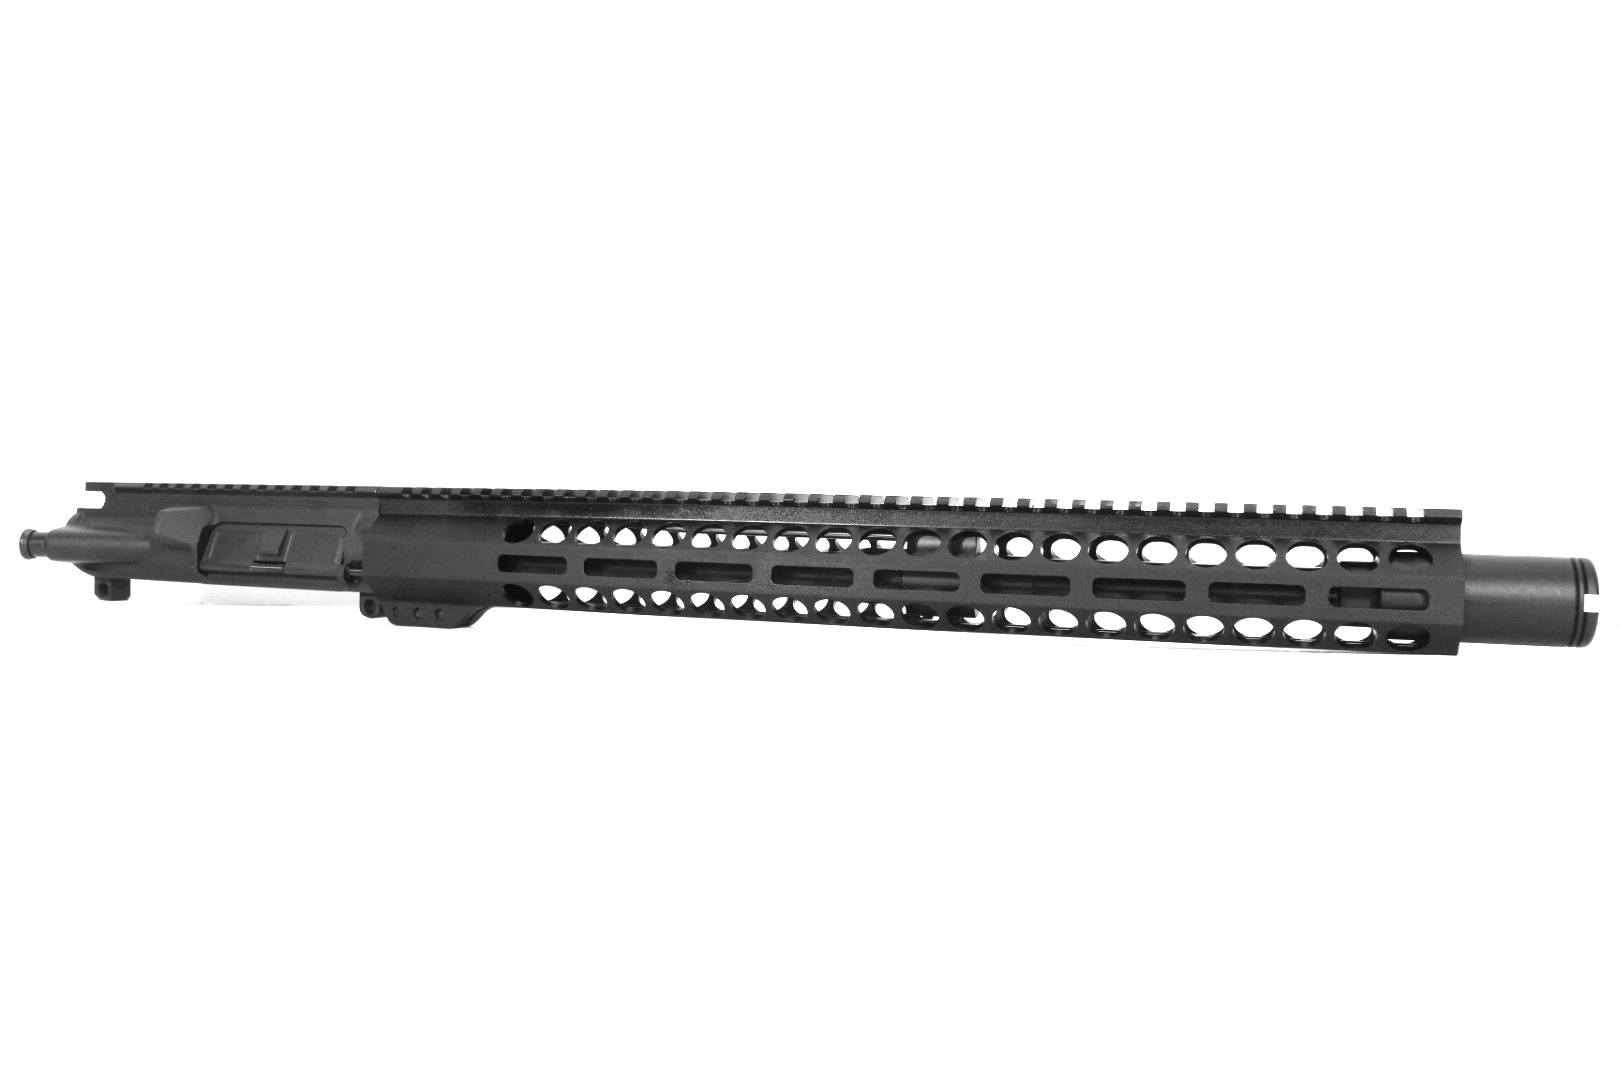 16 inch AR-15 5.56 NATO Melonite AR-15 M-LOK Keymod Upper with Flash Can